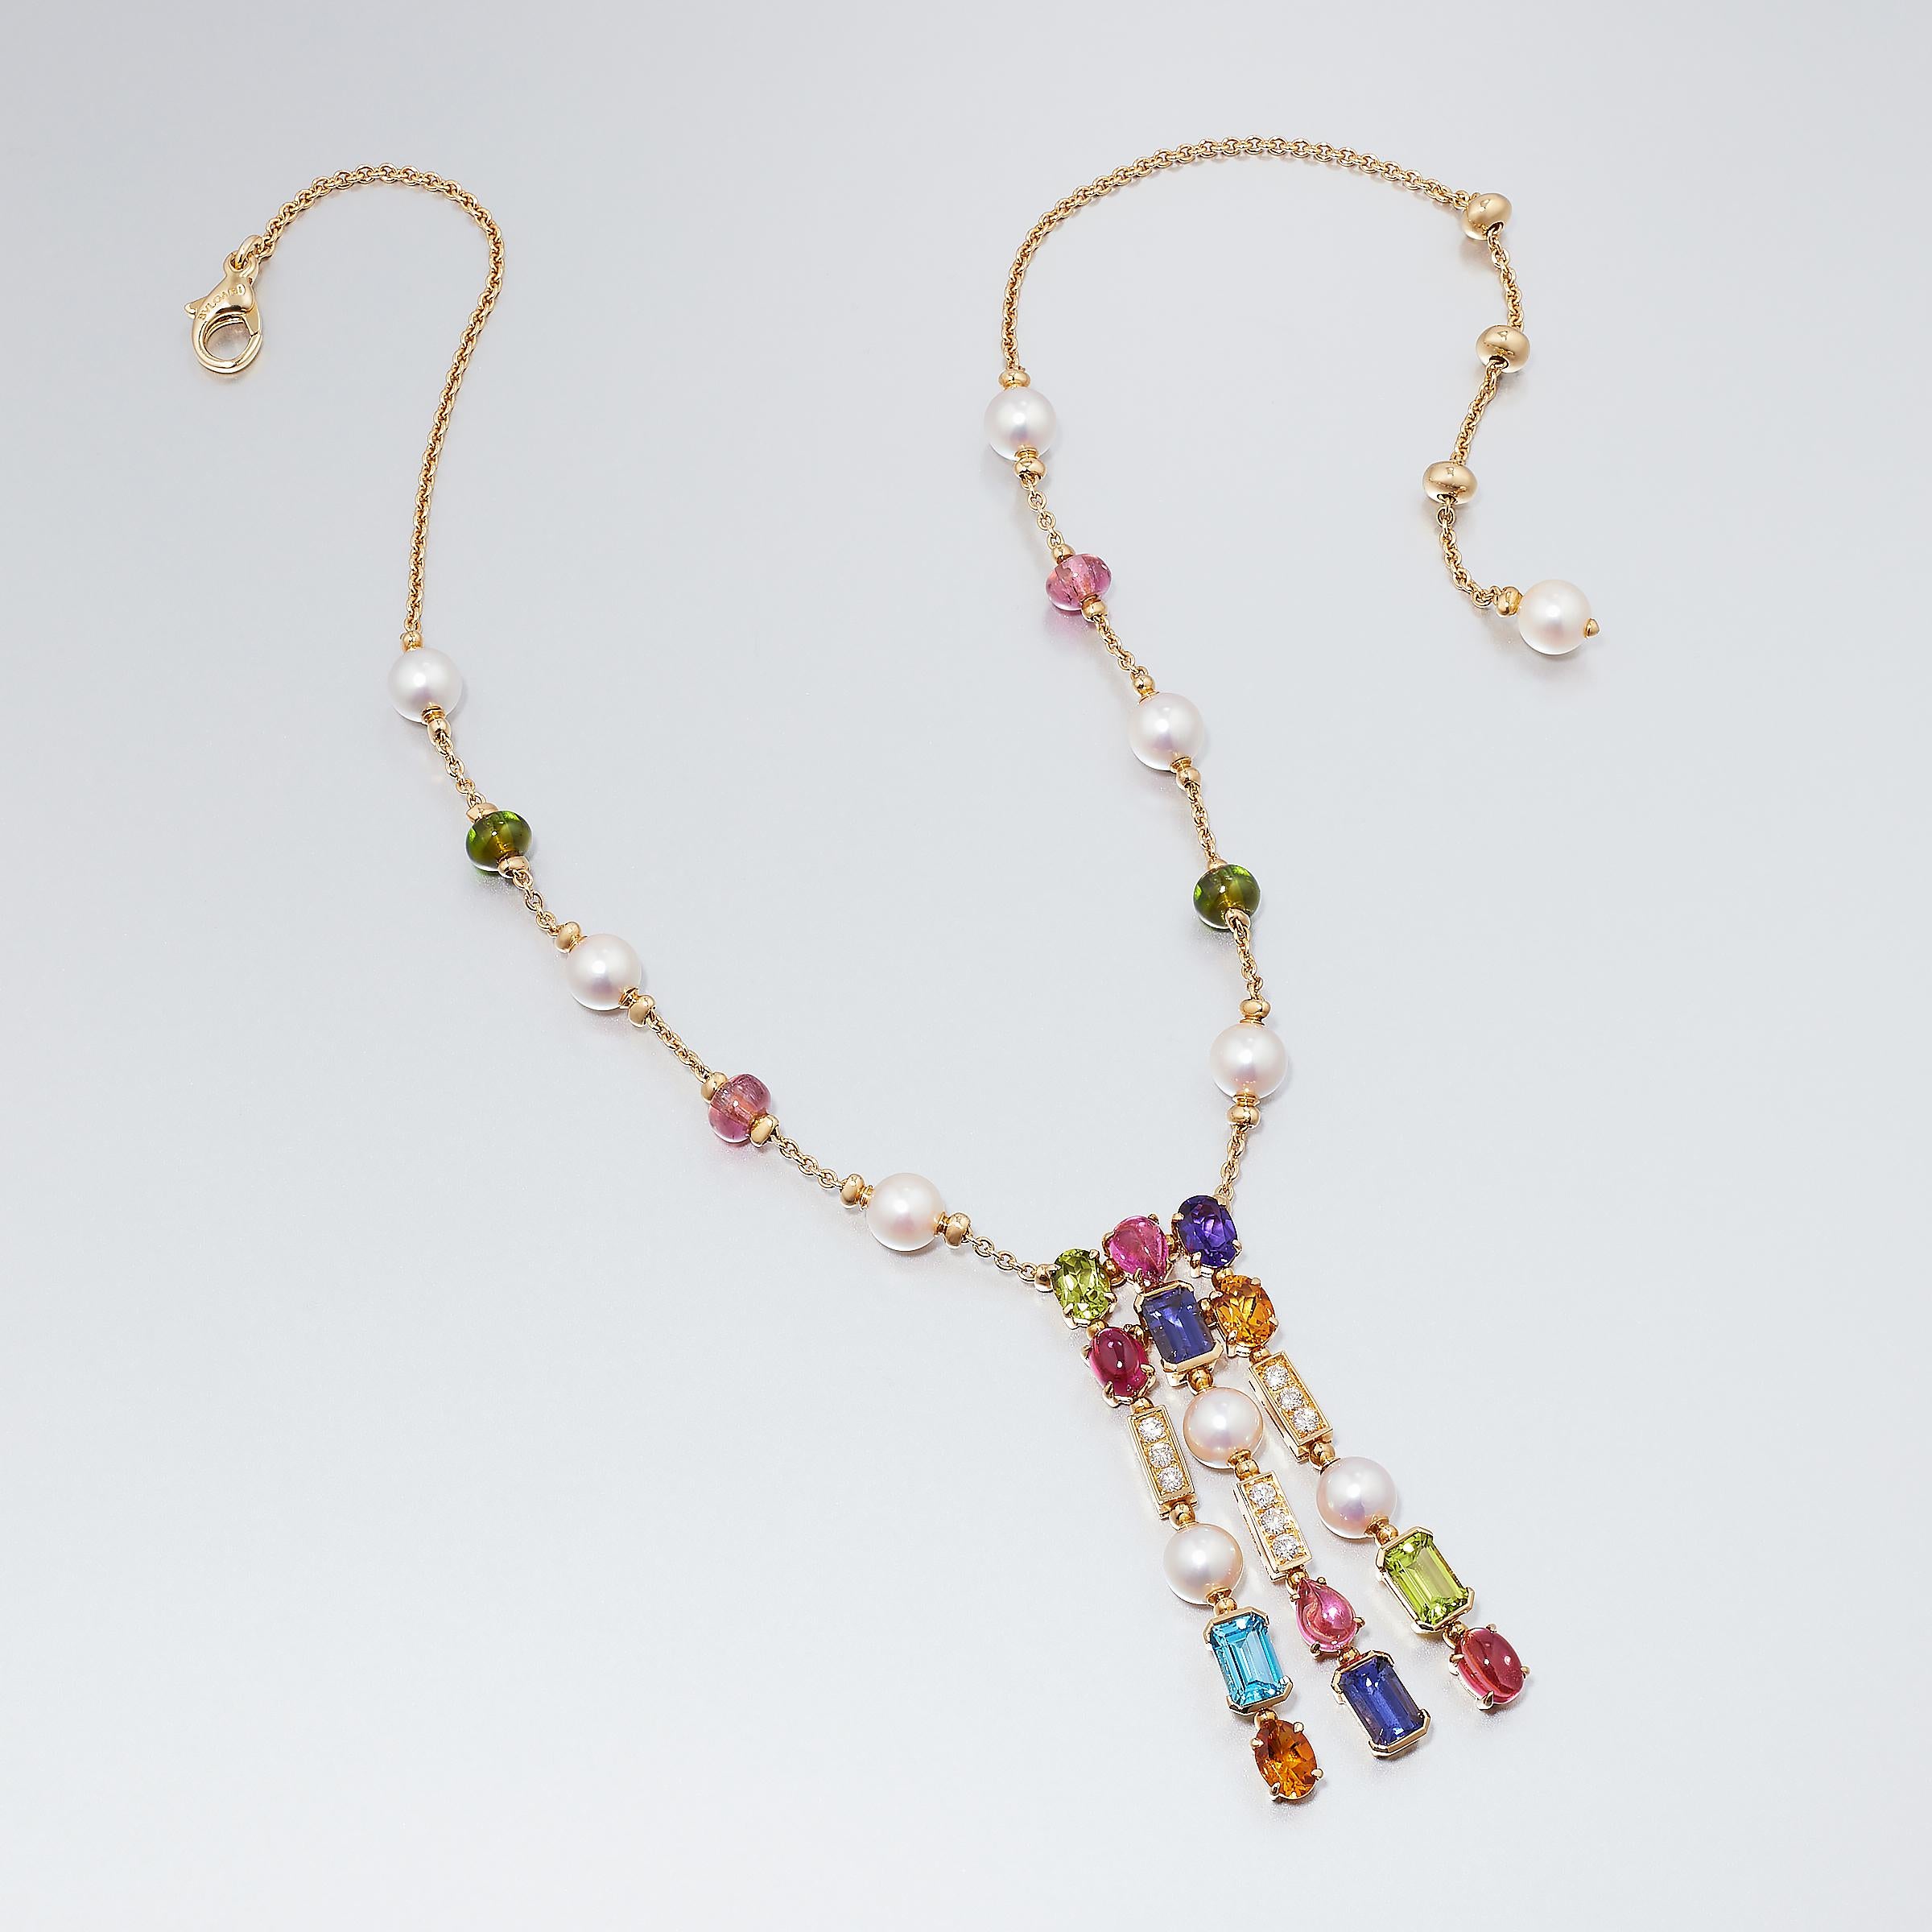 L'emblématique maison Bulgari propose ce joyeux collier de pierres précieuses multicolores, de perles et de diamants qui ne manquera pas d'attirer de nombreux regards admiratifs. Ce collier fait partie de la collection Allegra (joie en italien) de